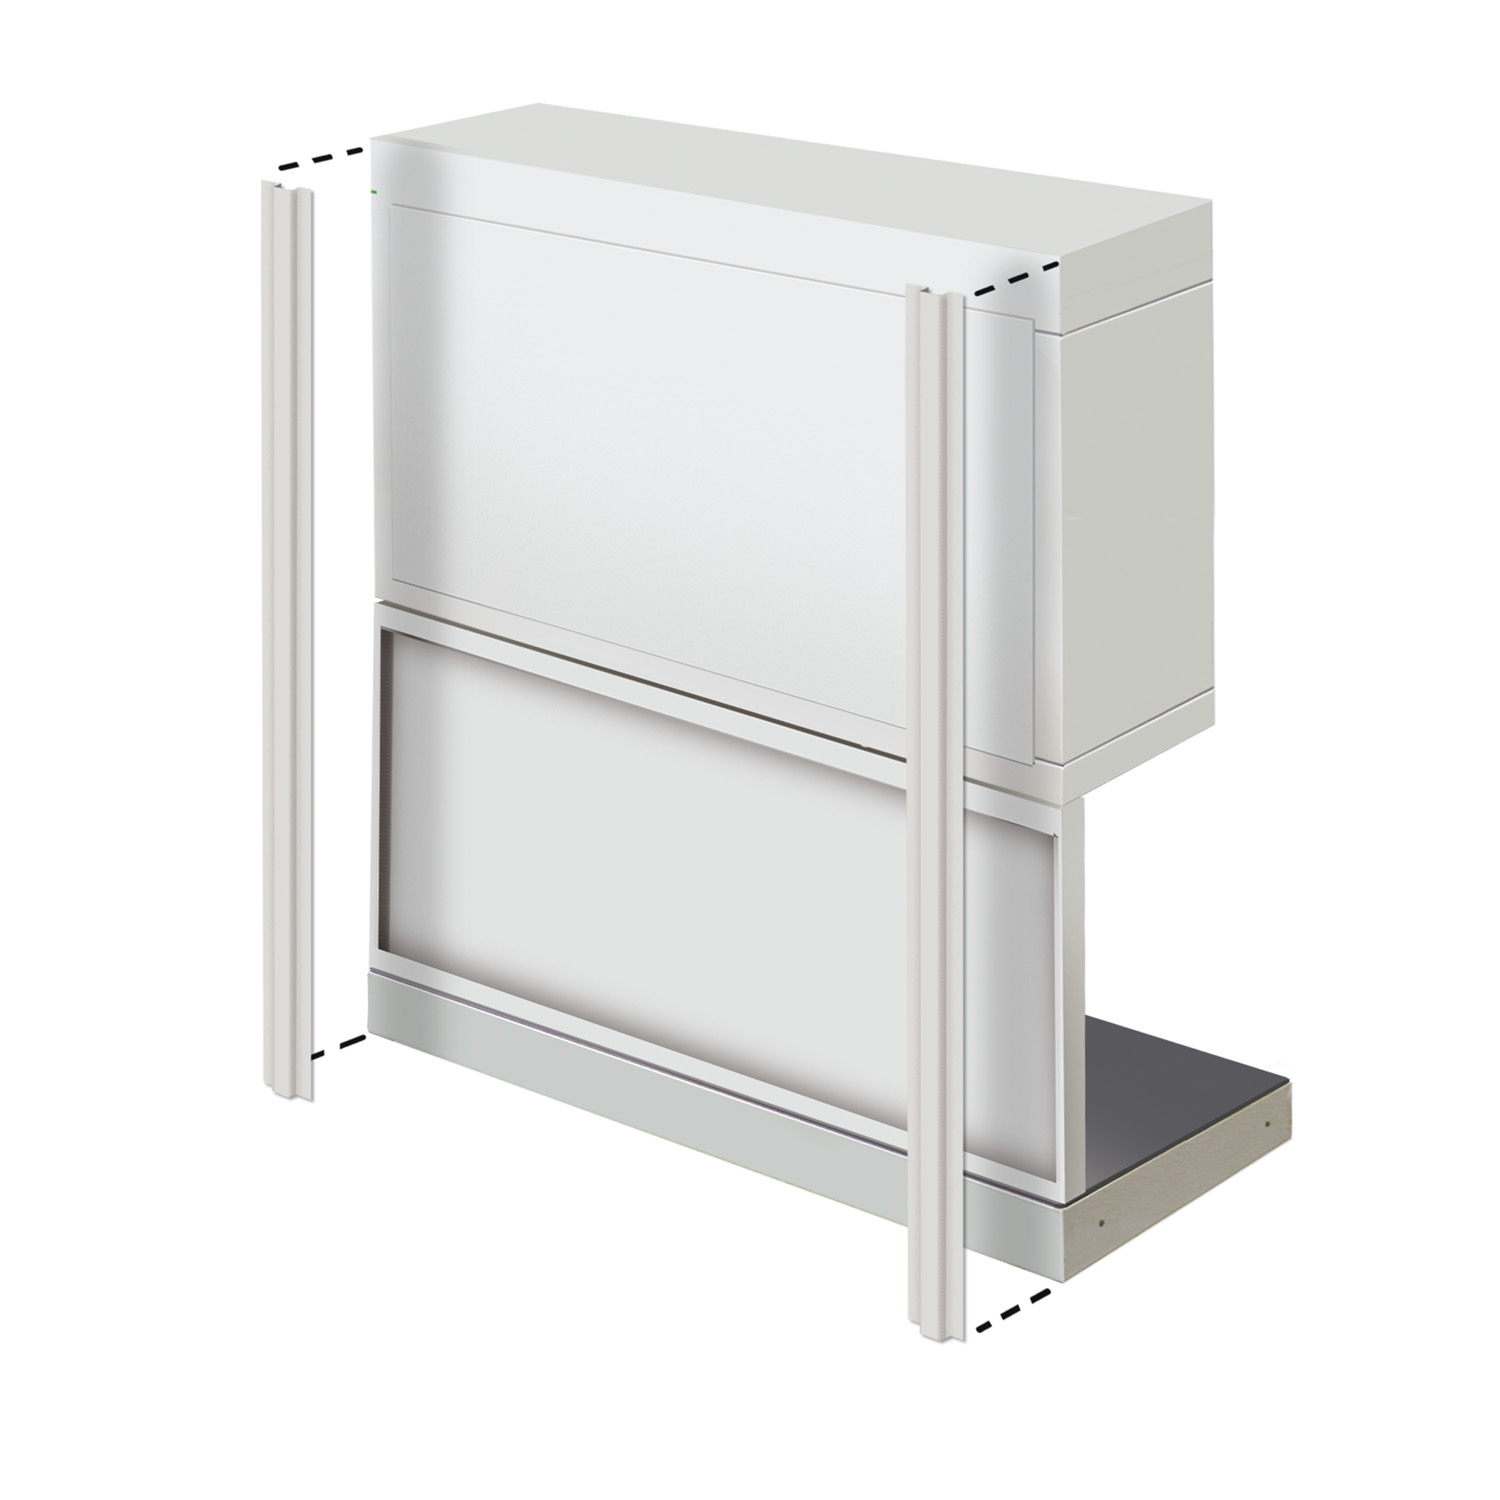 Soportes verticales x2 (Armario de muro/440mm panel/unidades de unión o banco de trabajo